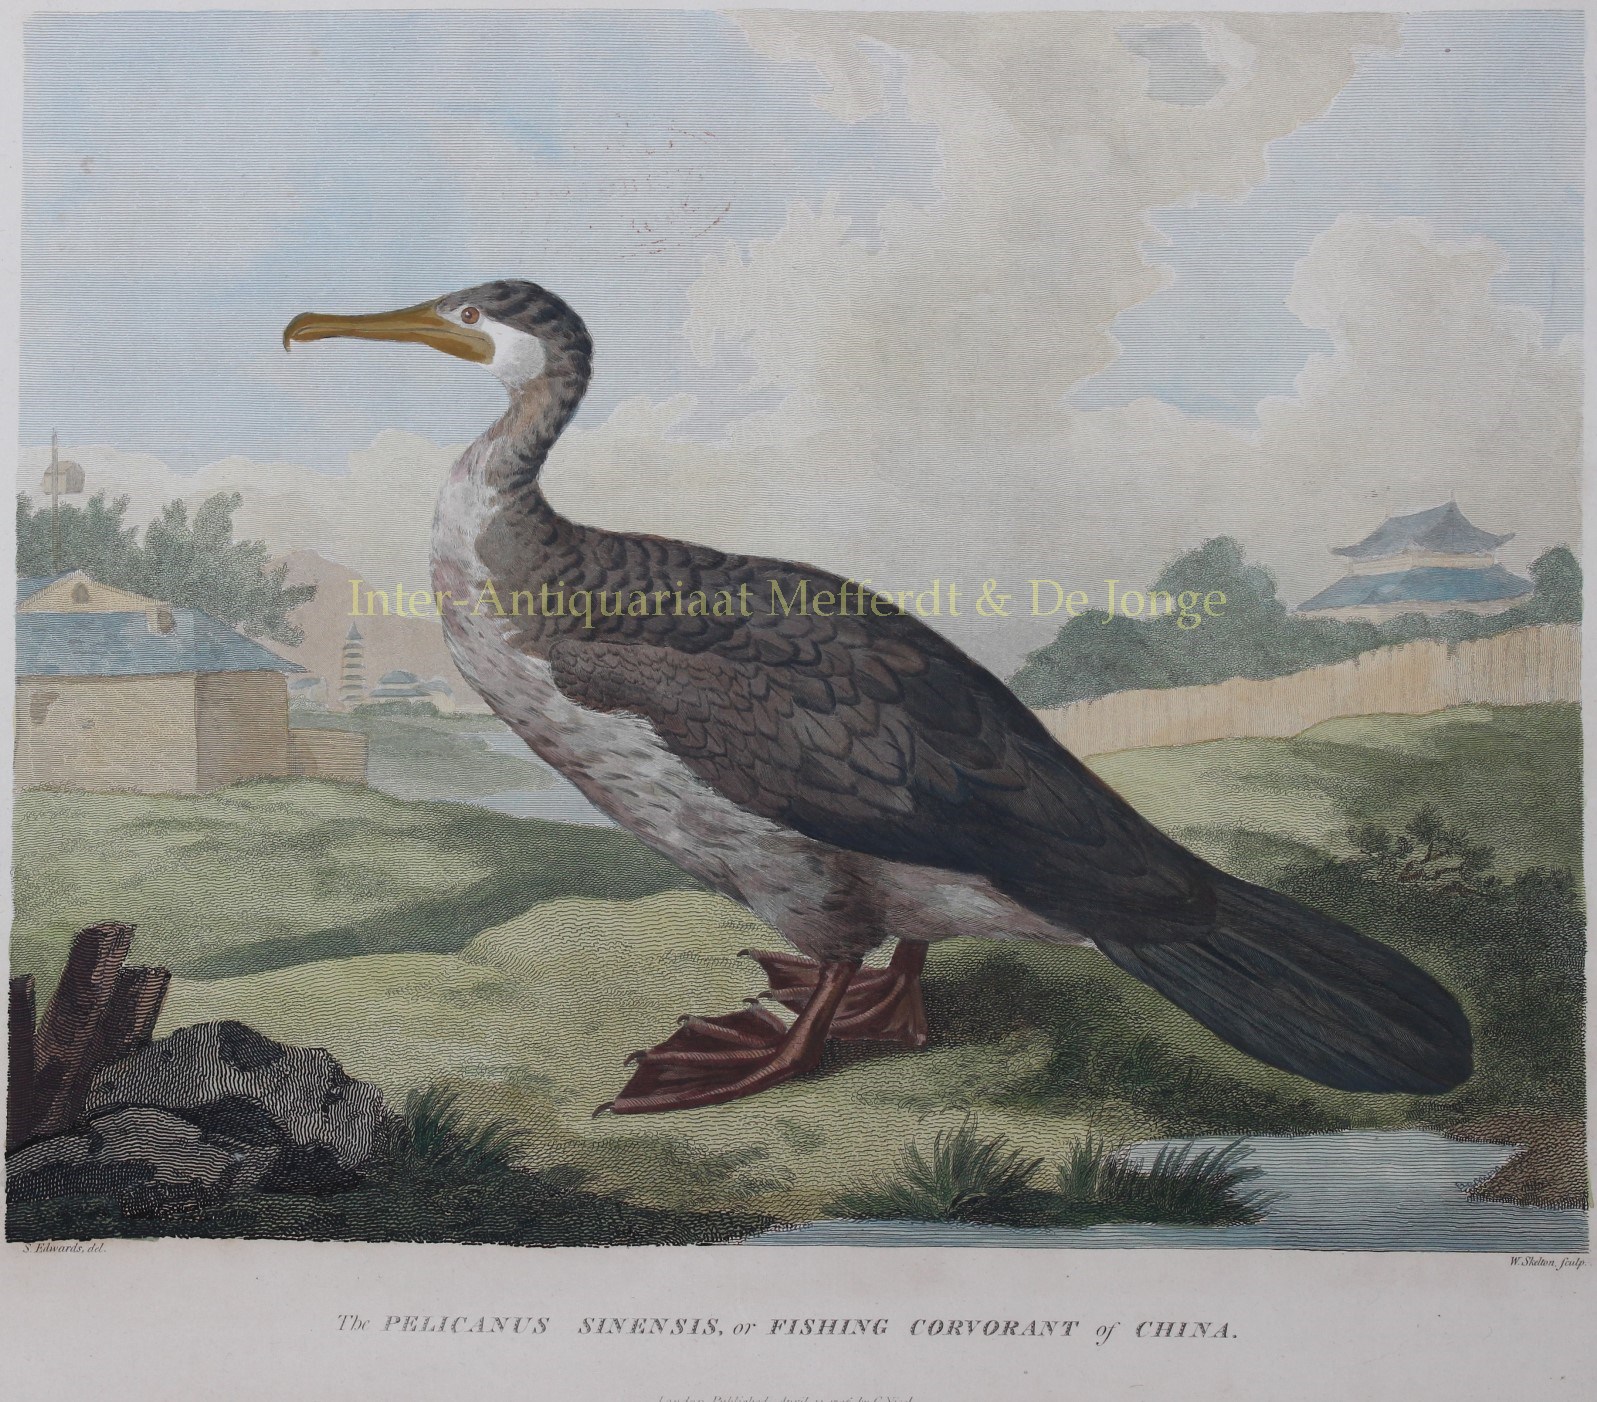 Alexander-- William (1767-1816) - Chinese fishing bird - after William Alexander, 1796